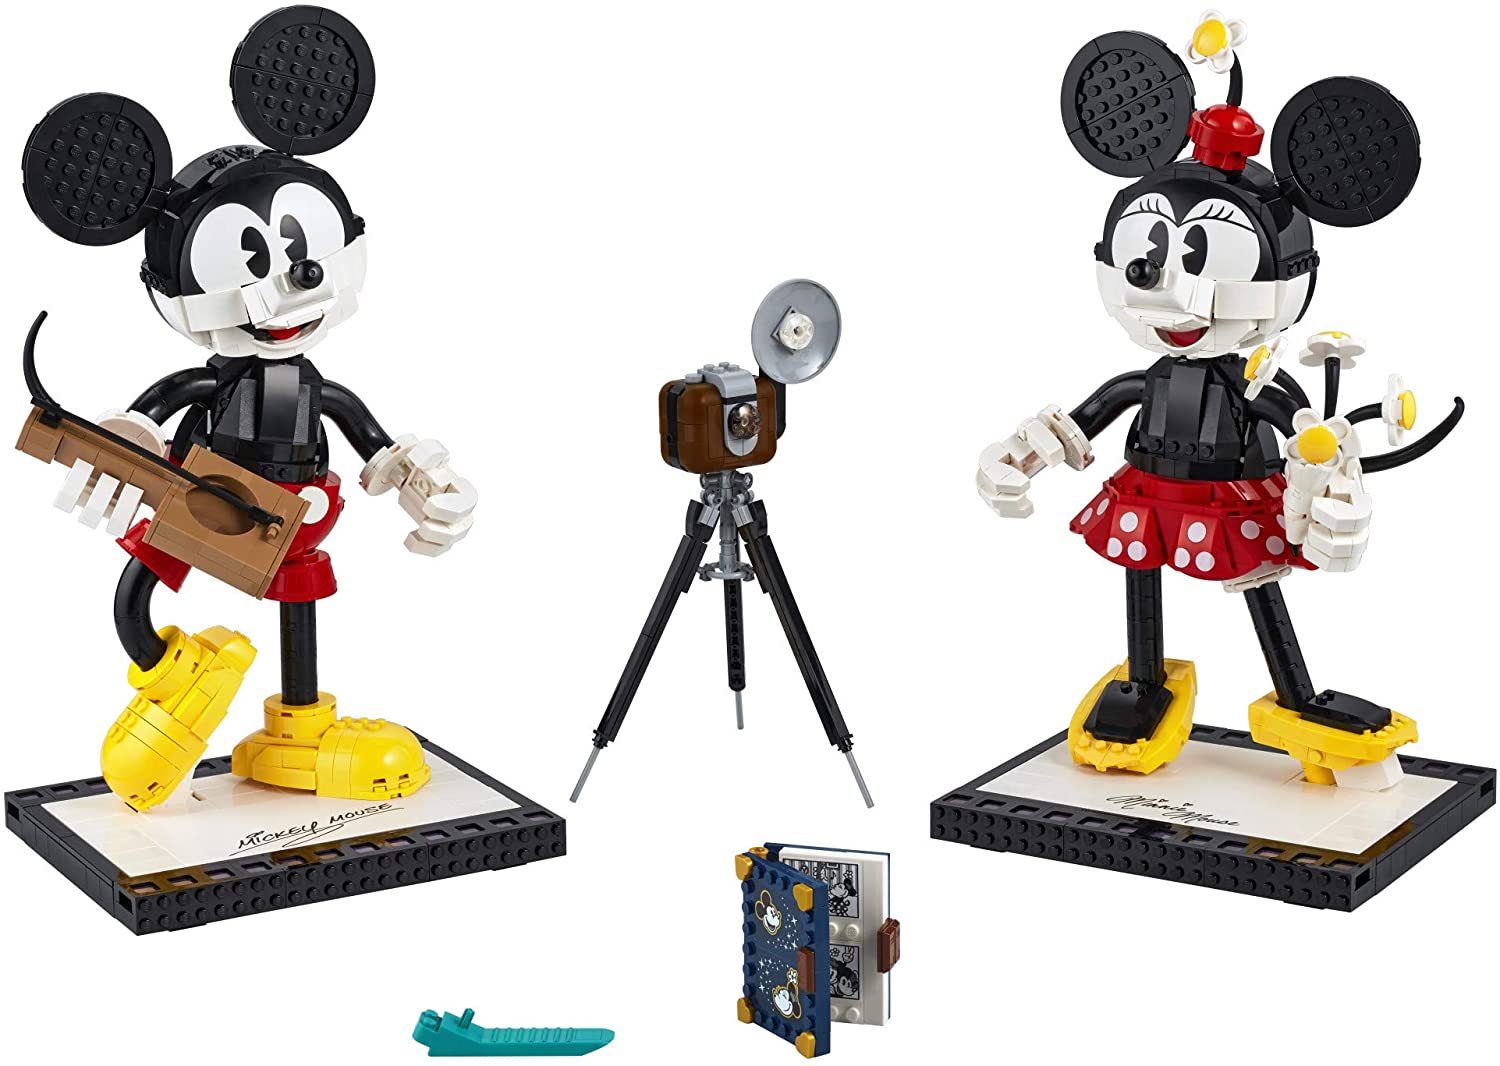 LEGO Disney Chuột Mickey & Chuột Minnie Nhân vật có thể xây dựng ...